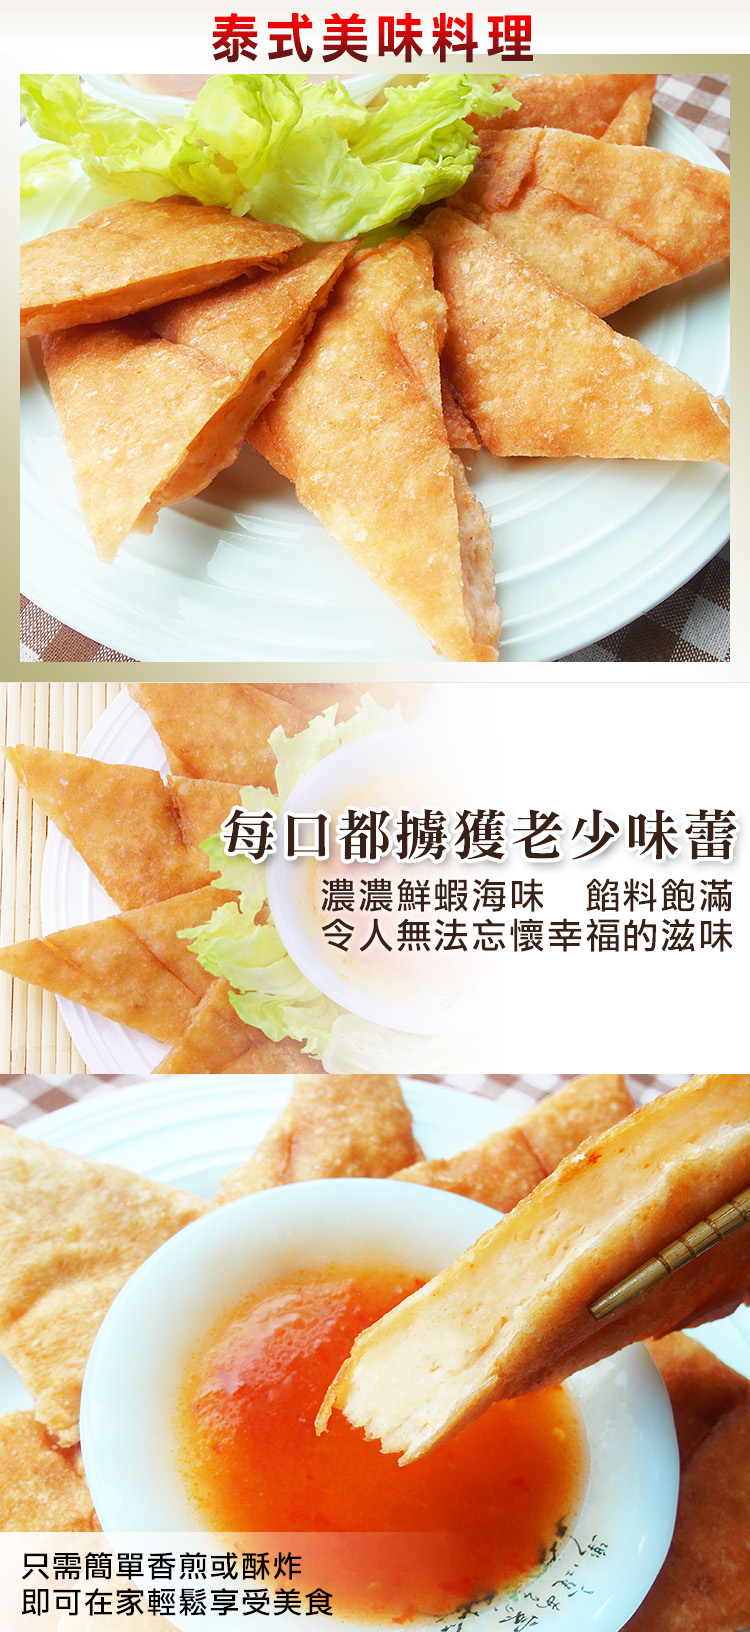 (團購組) 食吧嚴選 泰式黃金月亮蝦餅 30片組( 200g±10%/片 )-附泰式酸甜醬